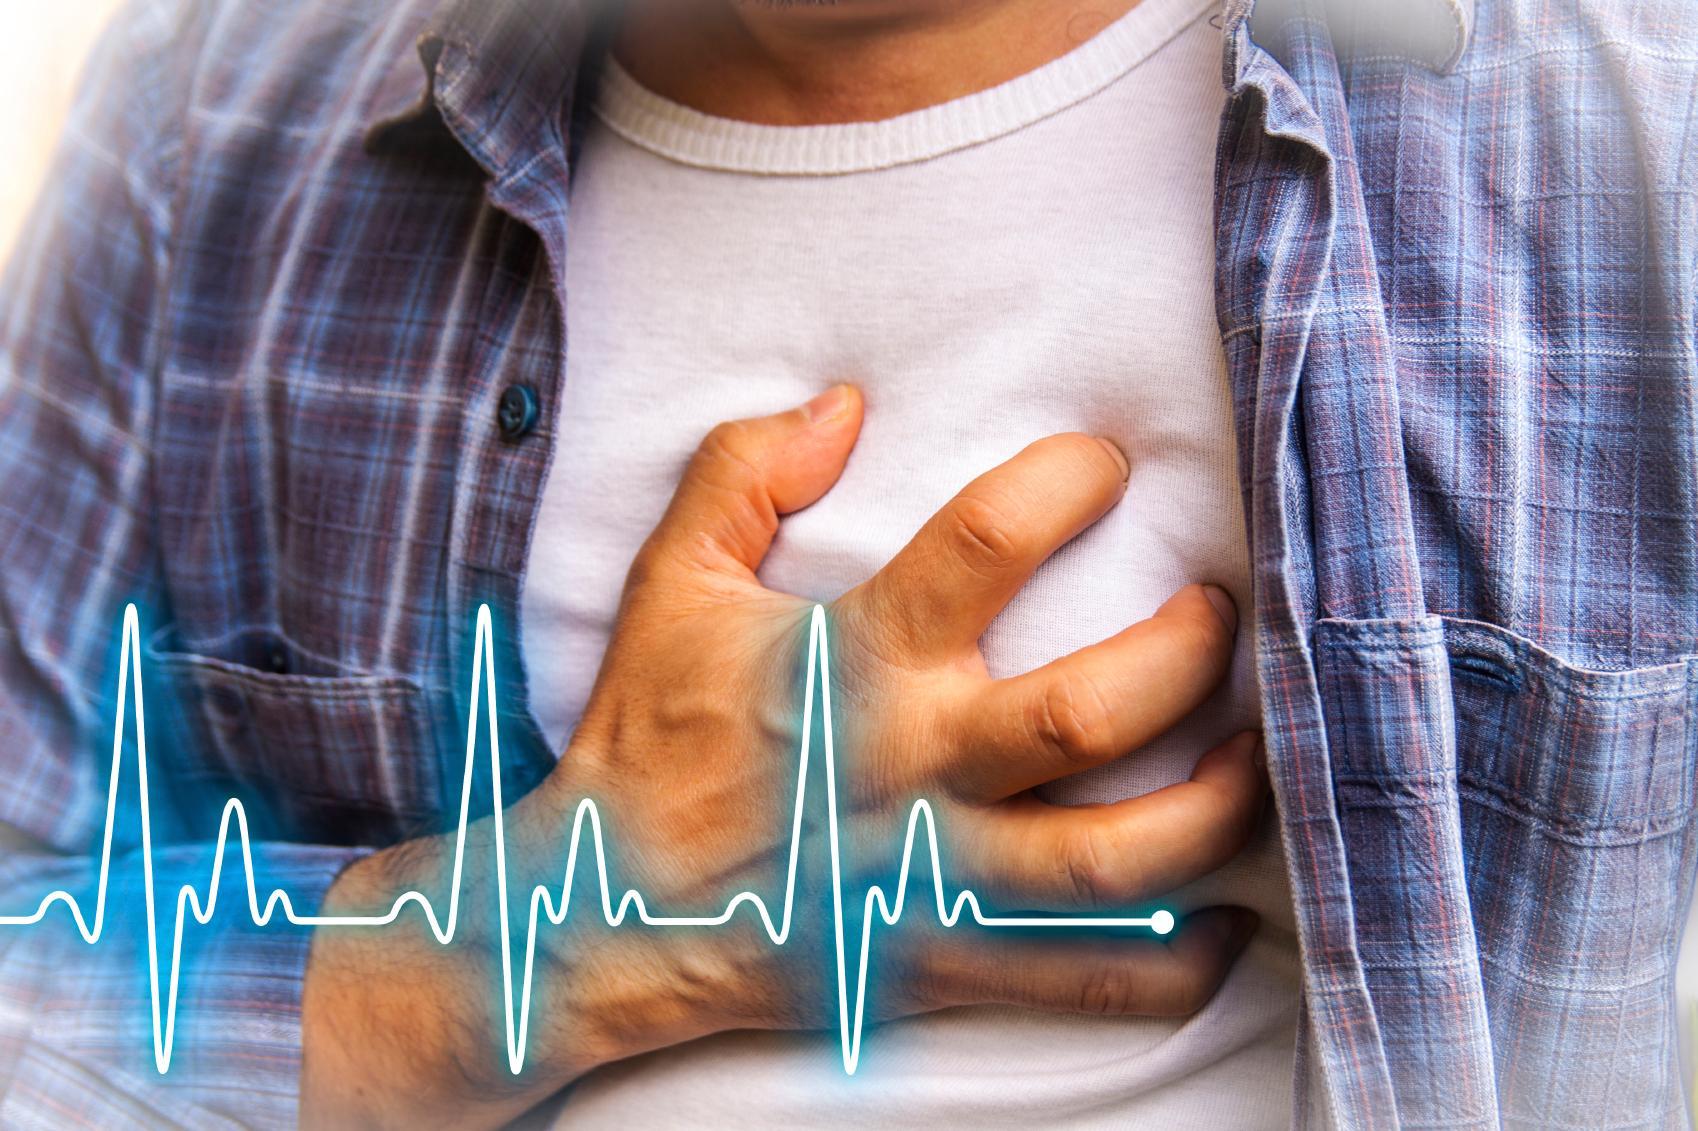 हृदय रोग की संभावनाएं बढाती हैं आपकी ये आदतें, जानें बचाव के उपाय!